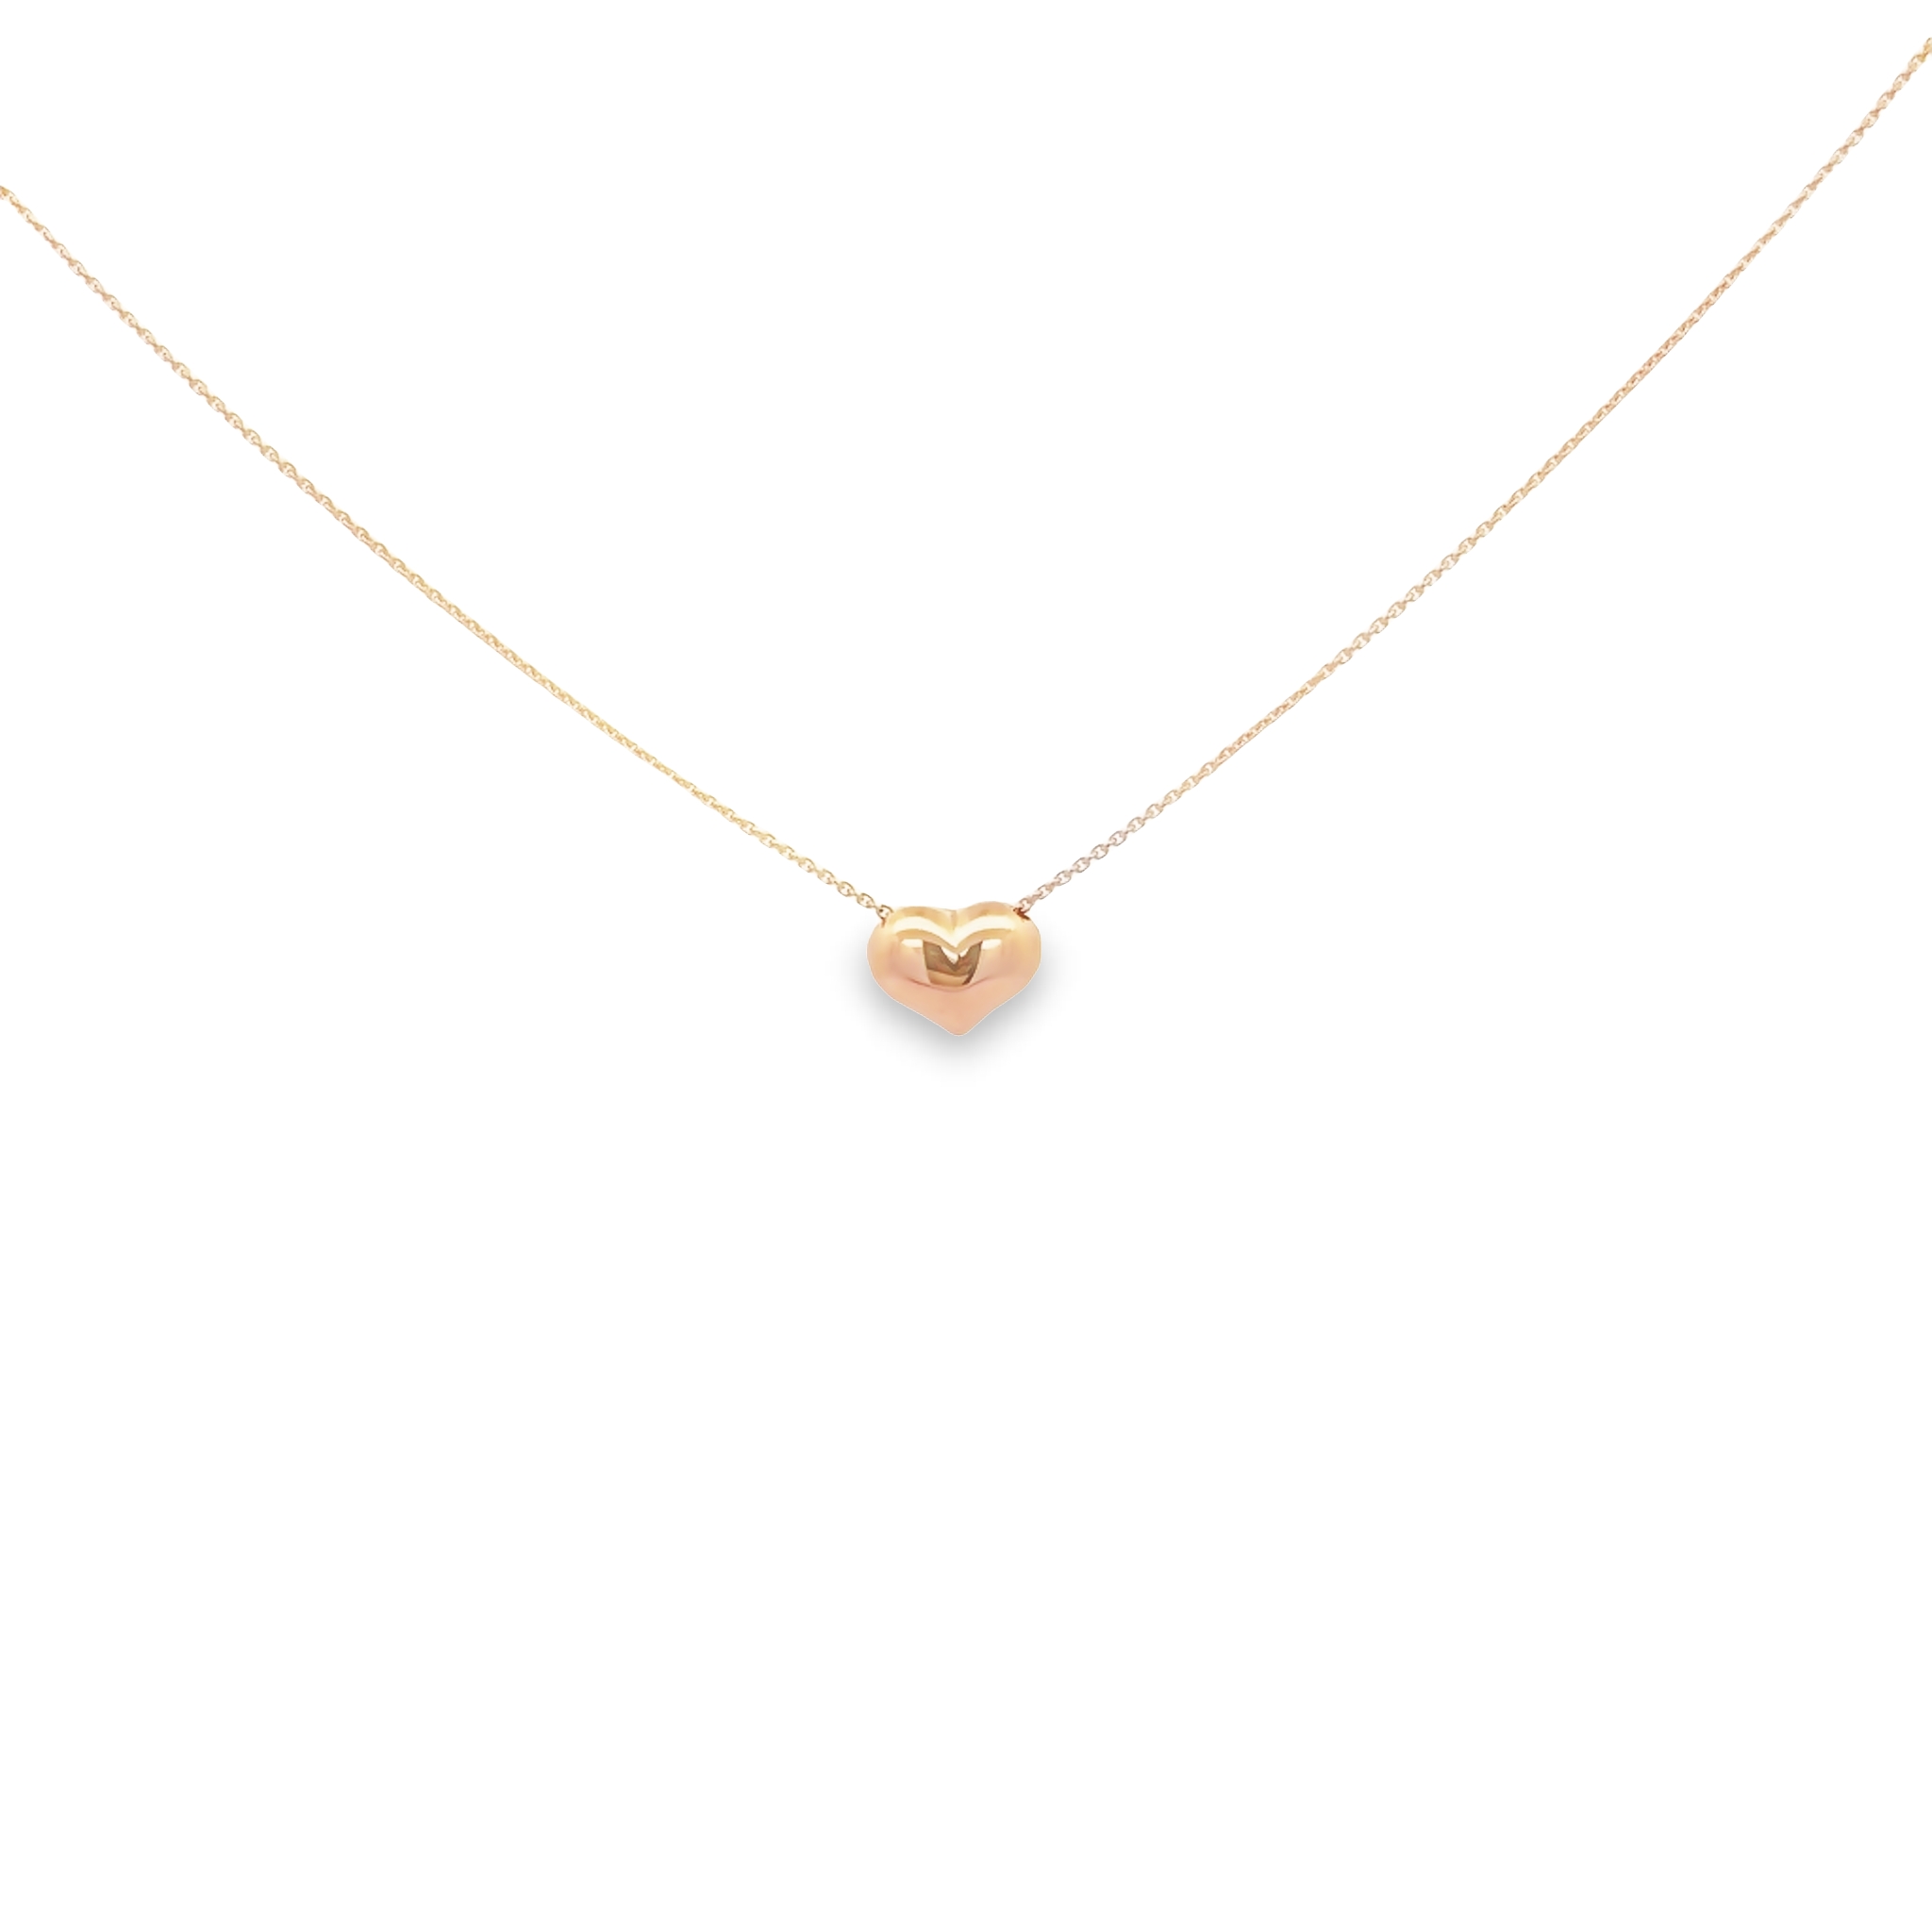 14 karat rose gold puffed heart necklace.